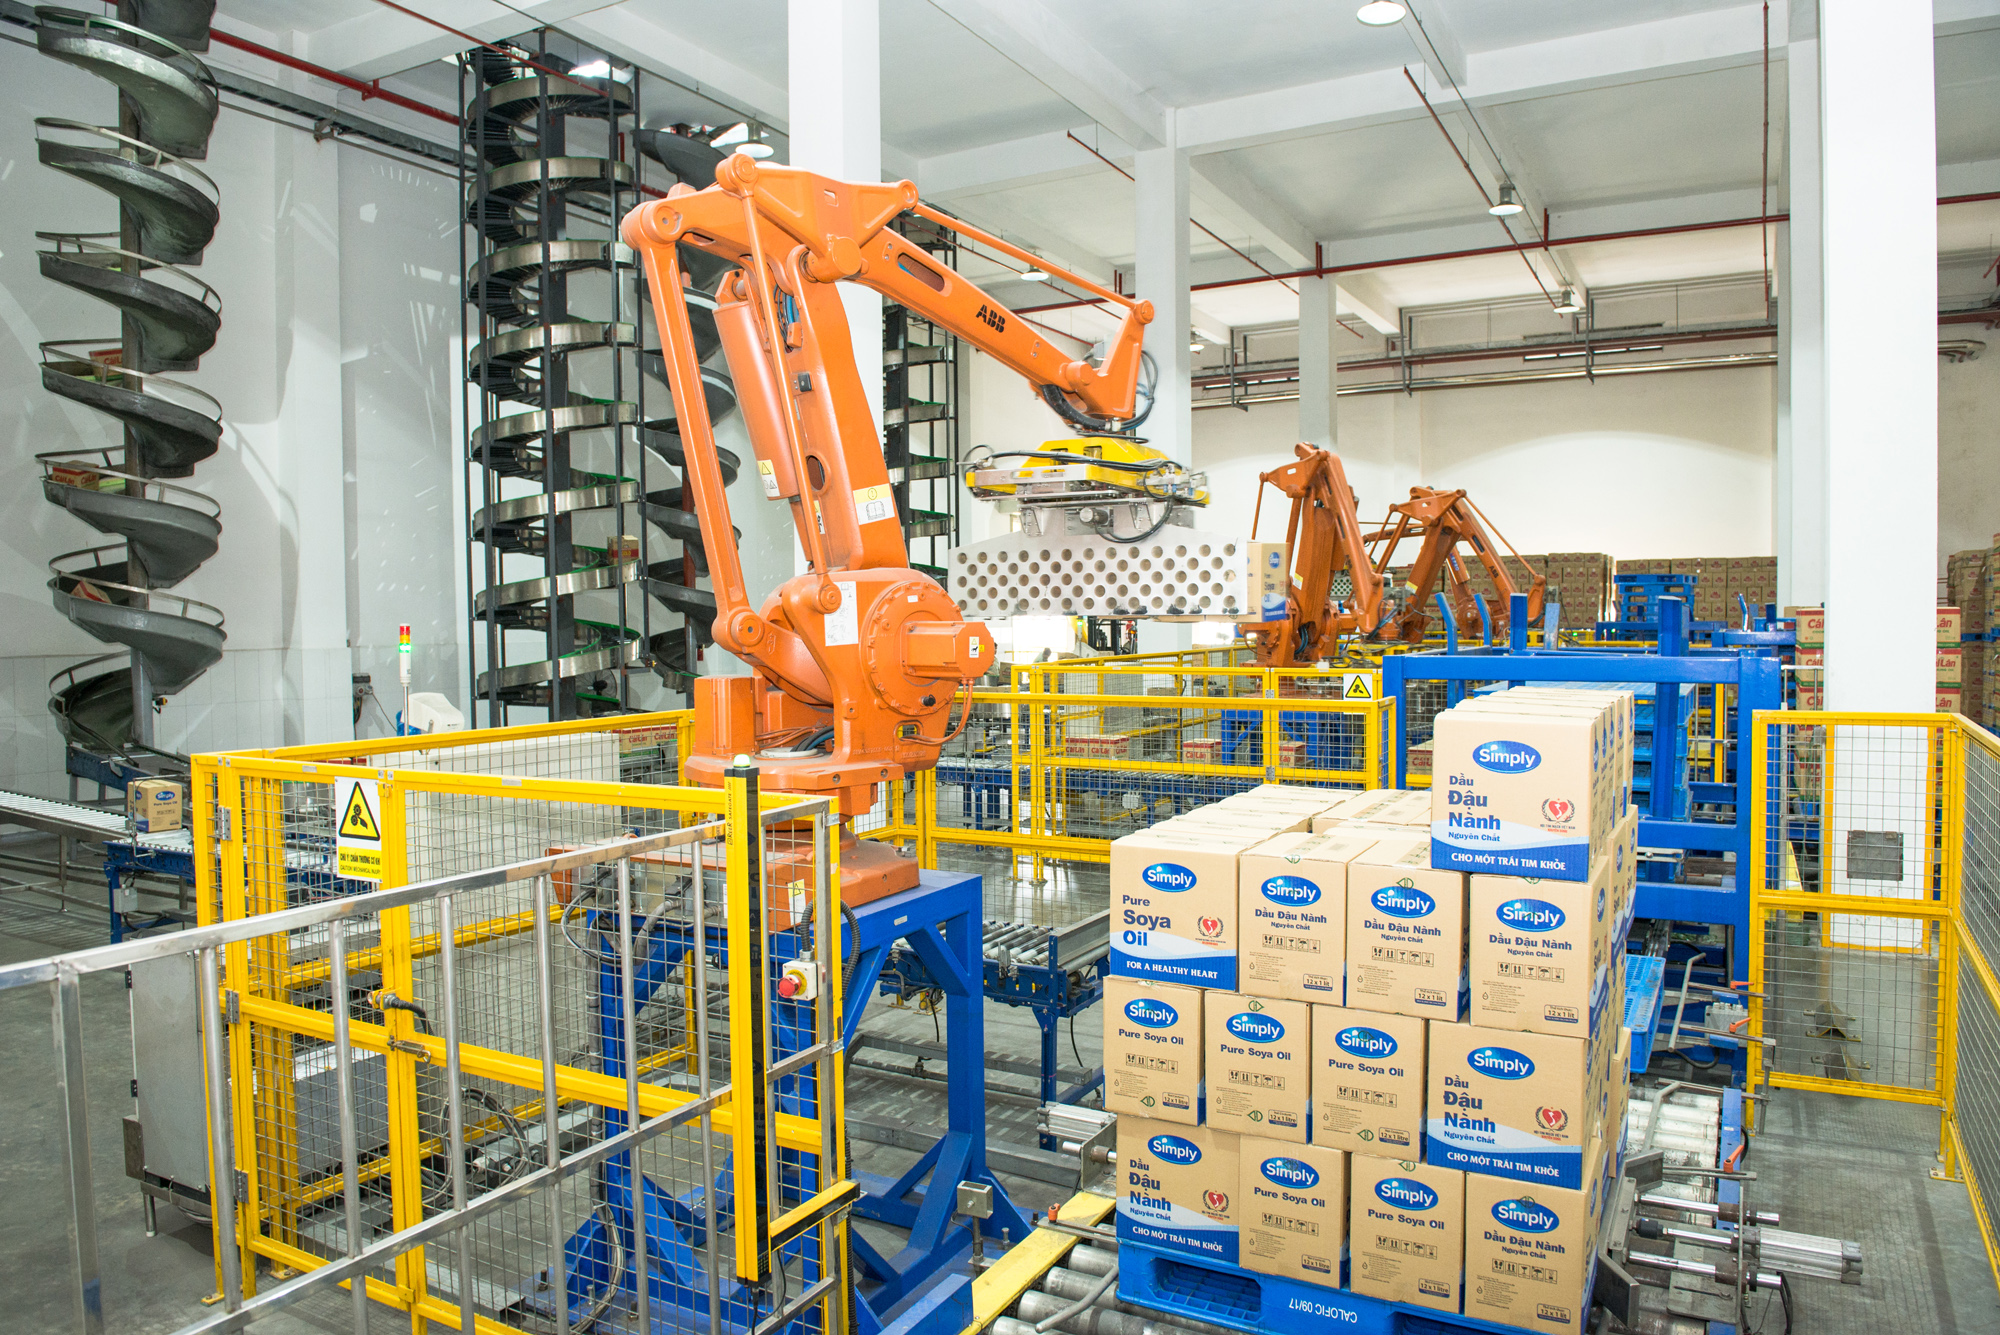 Sử dụng robot trong đóng gói, vận chuyển tại Công ty Dầu thực vật Cái Lân. Ảnh: Mạnh Trường